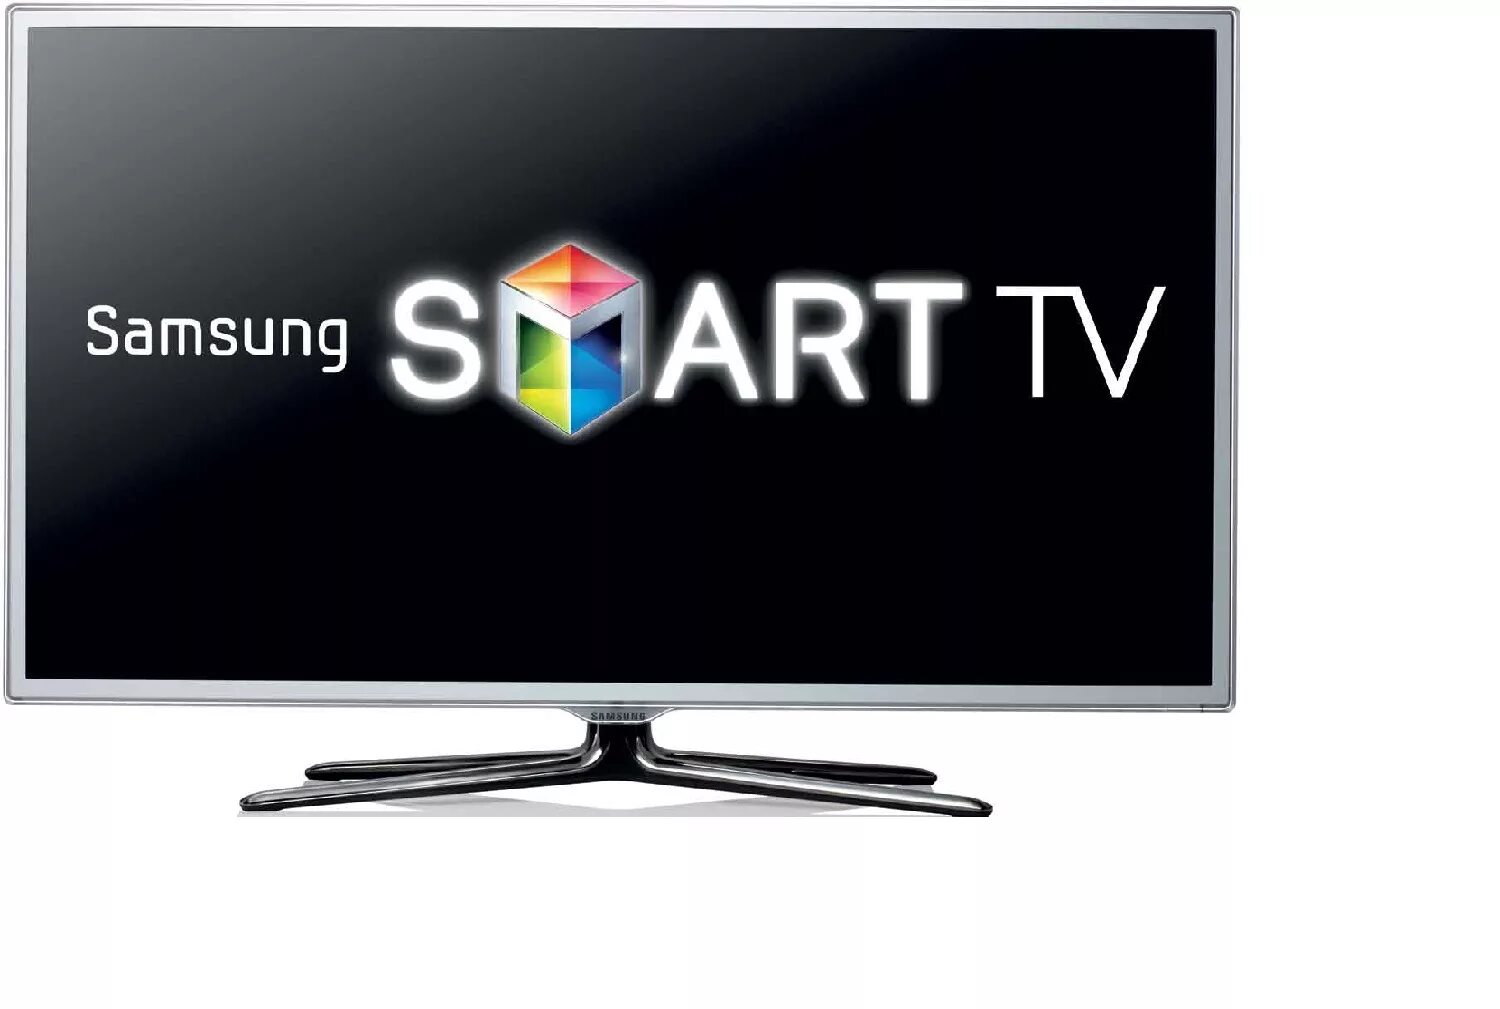 Смат тв. Samsung Smart TV. Телевизор самсунг смарт. IPTV Samsung Smart TV.